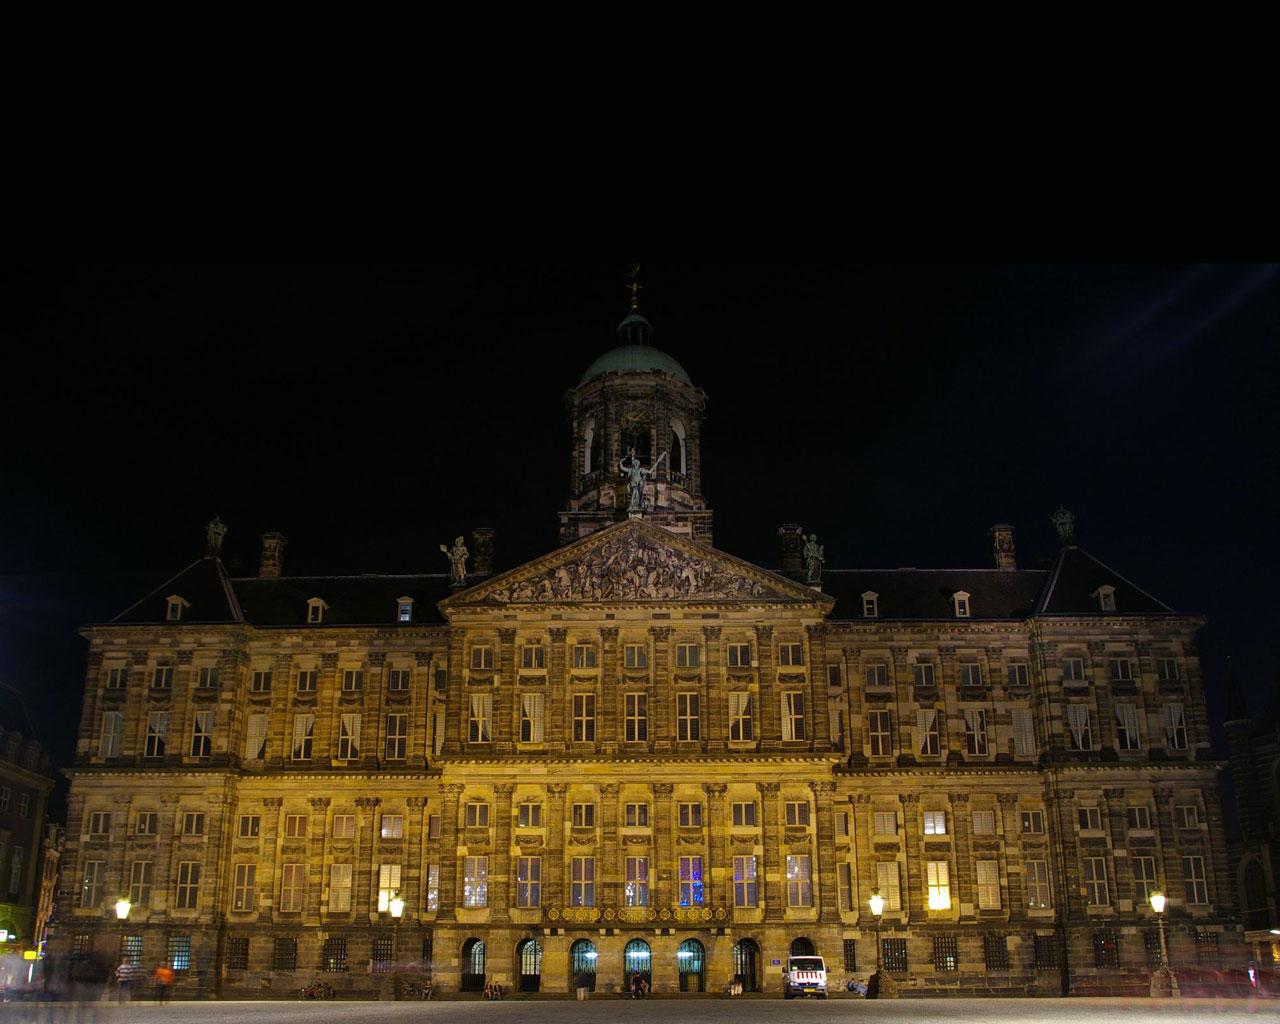 Amsterdam - Royal Palace Wallpaper #2 1280 x 1024 